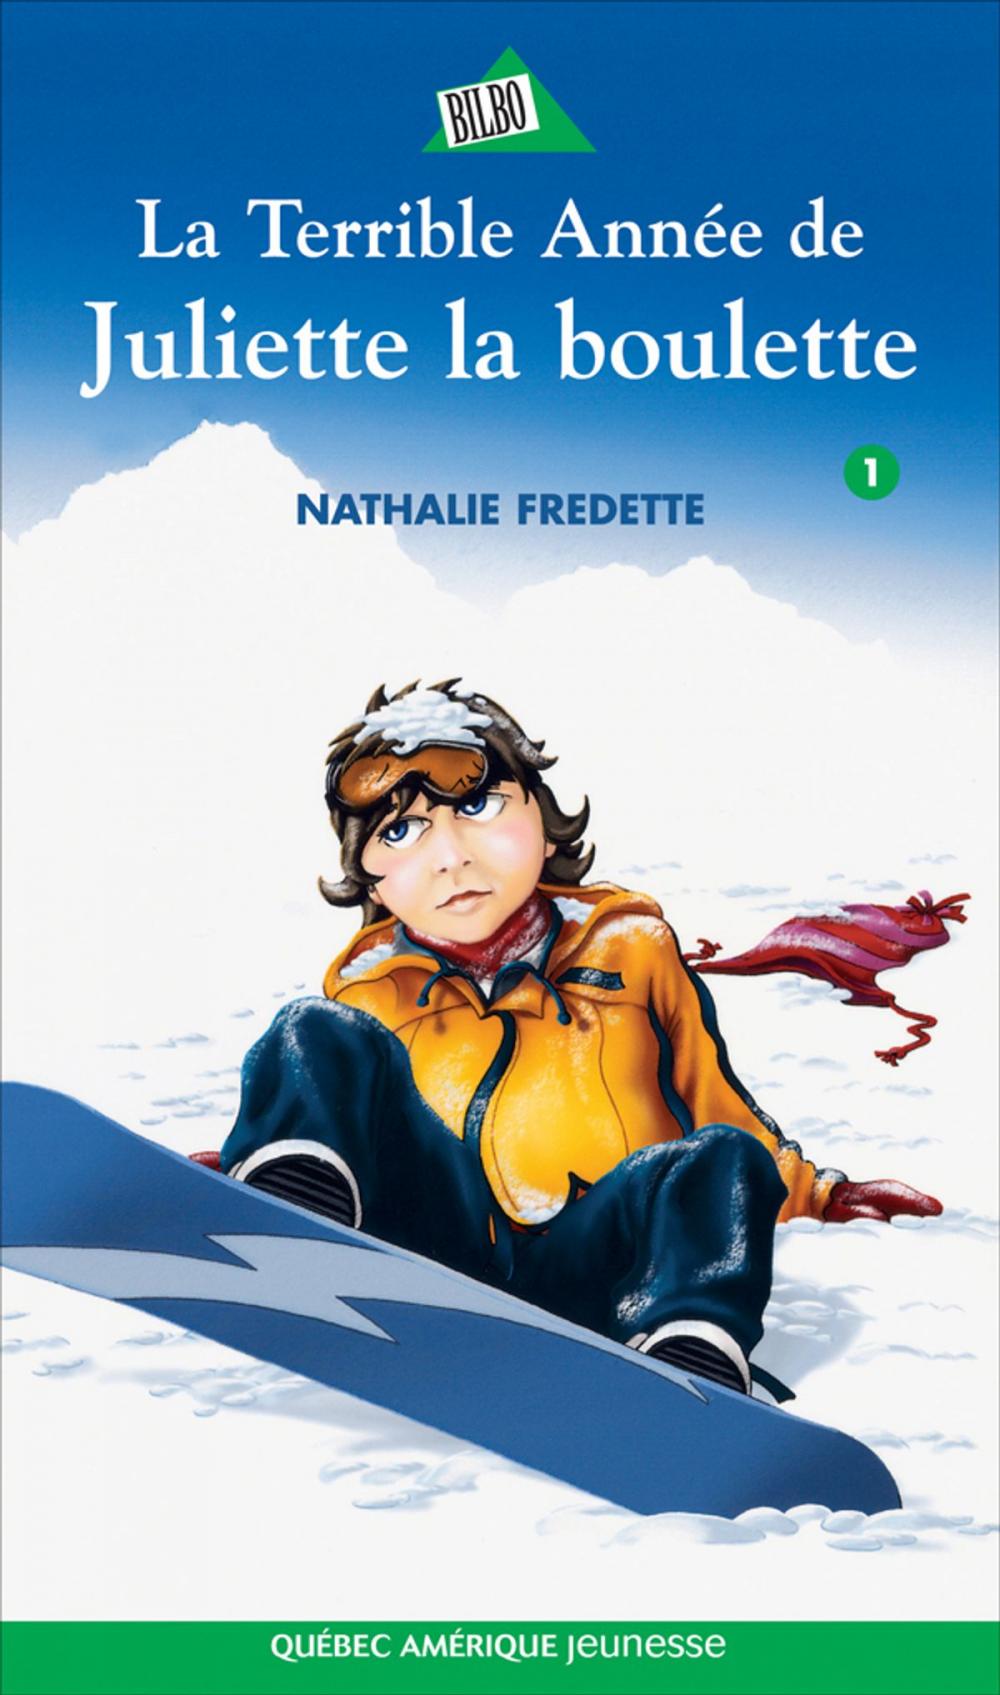 Big bigCover of Juliette 1 - La Terrible Année de Juliette la boulette